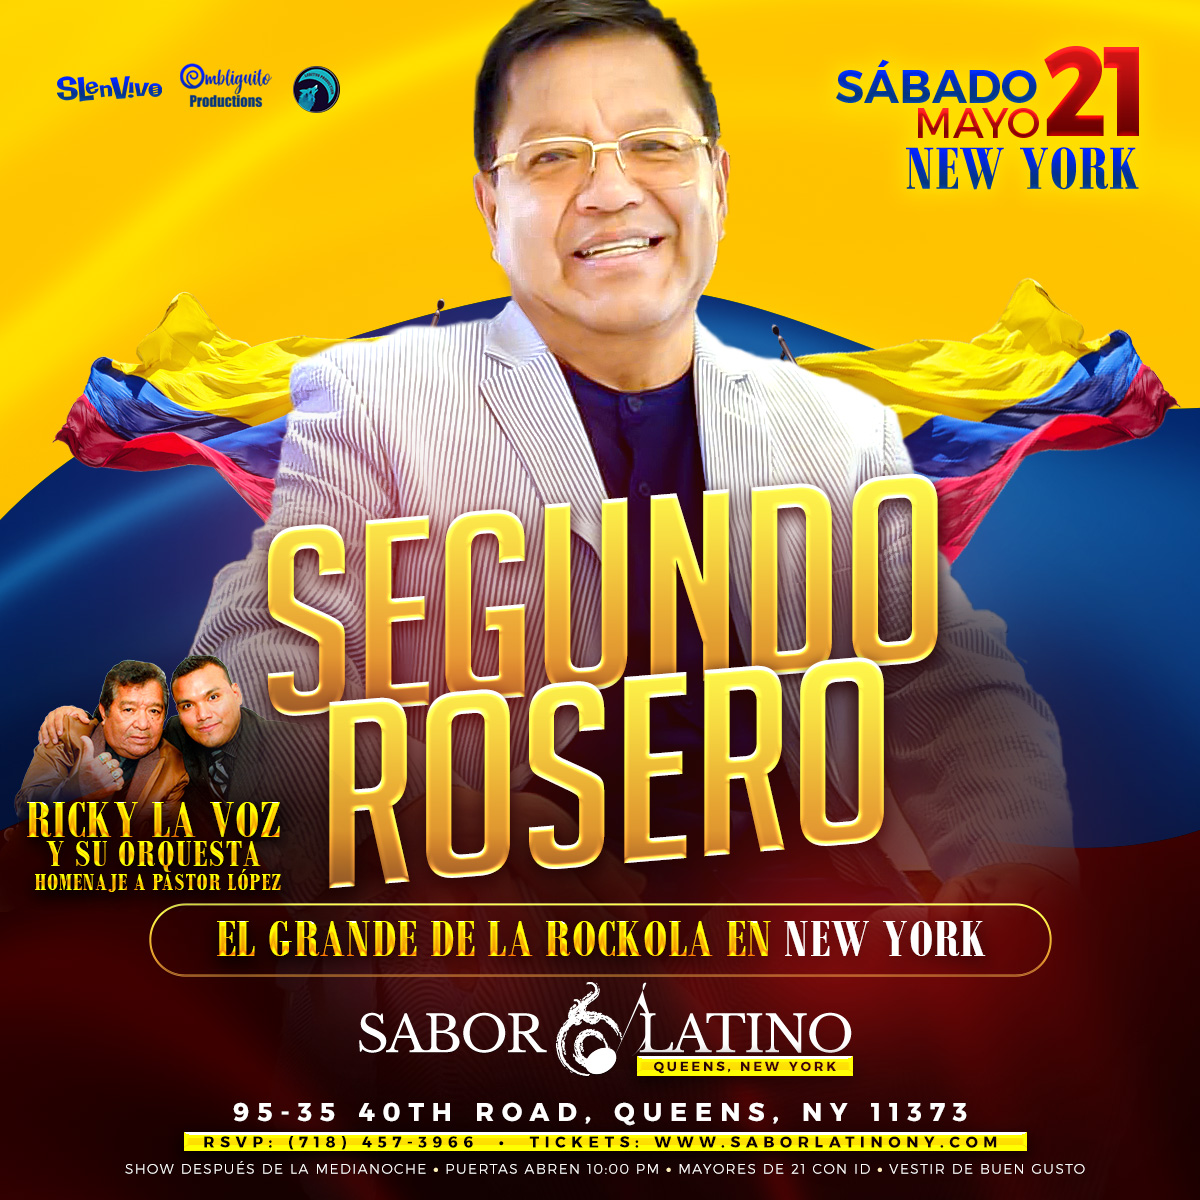 SEGUNDO ROSERO [SABADO] ! NEW YORK Tickets - BoletosExpress